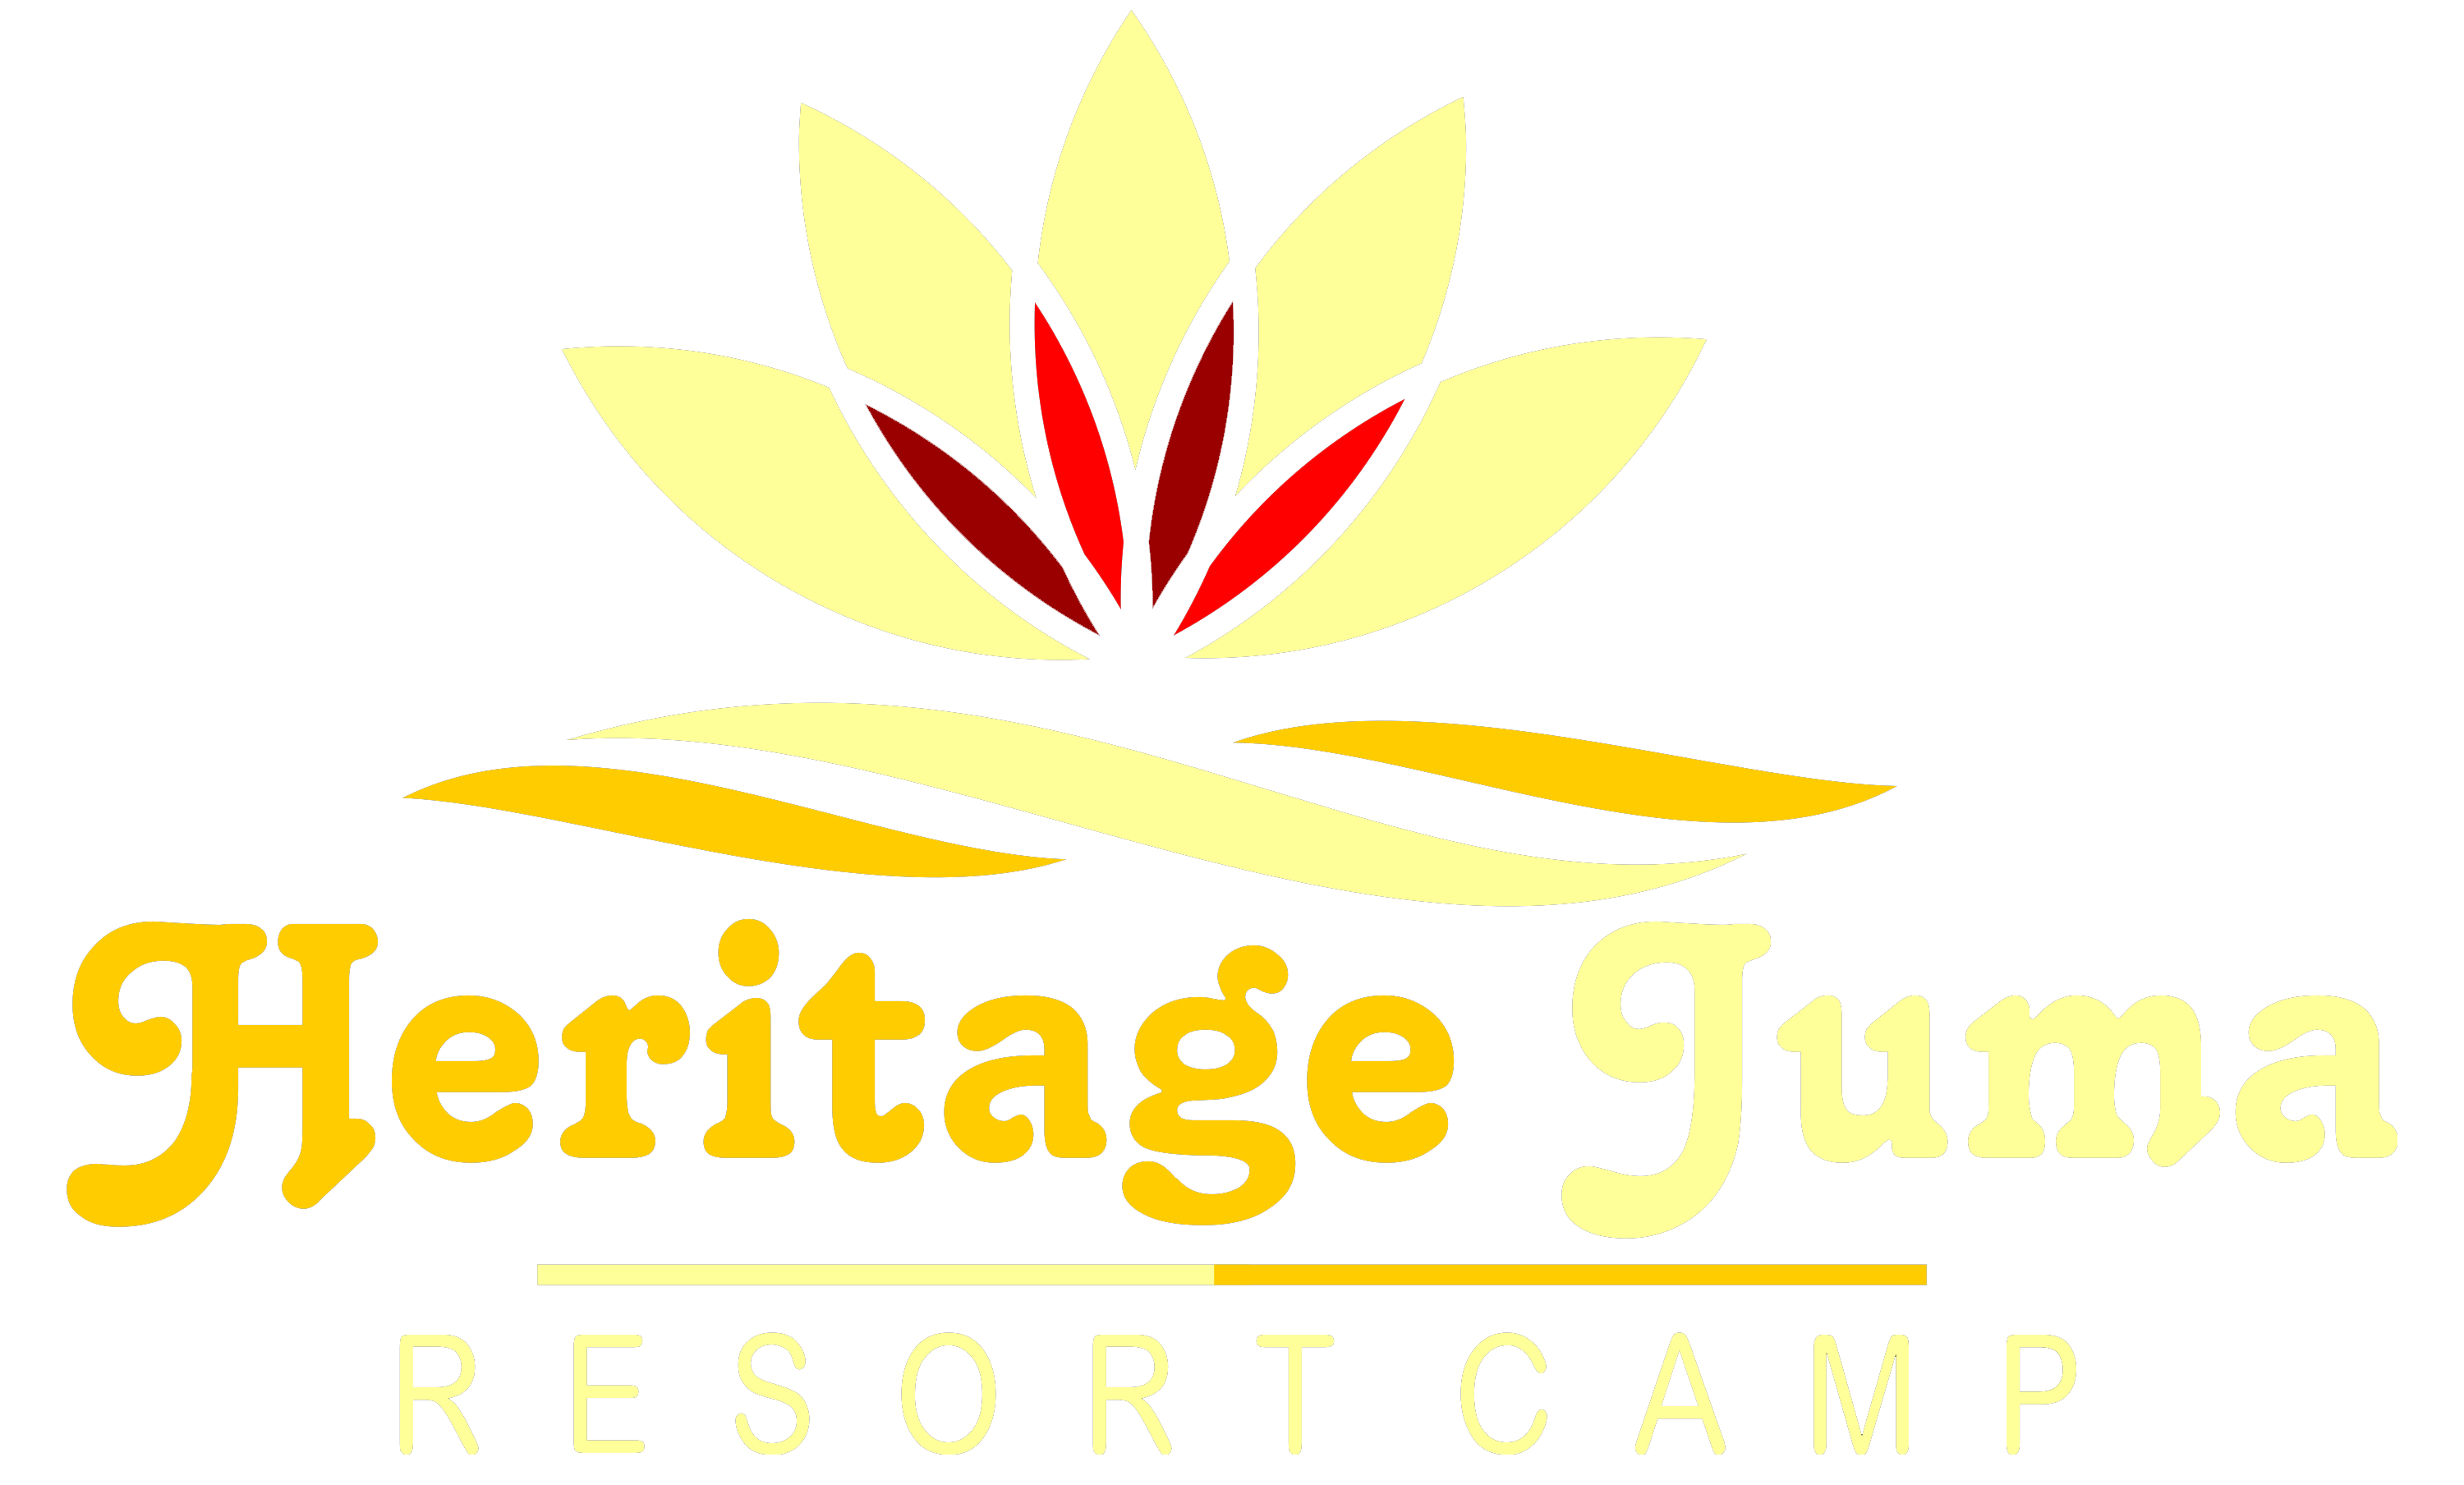 Heritage Juma Resort Camp 